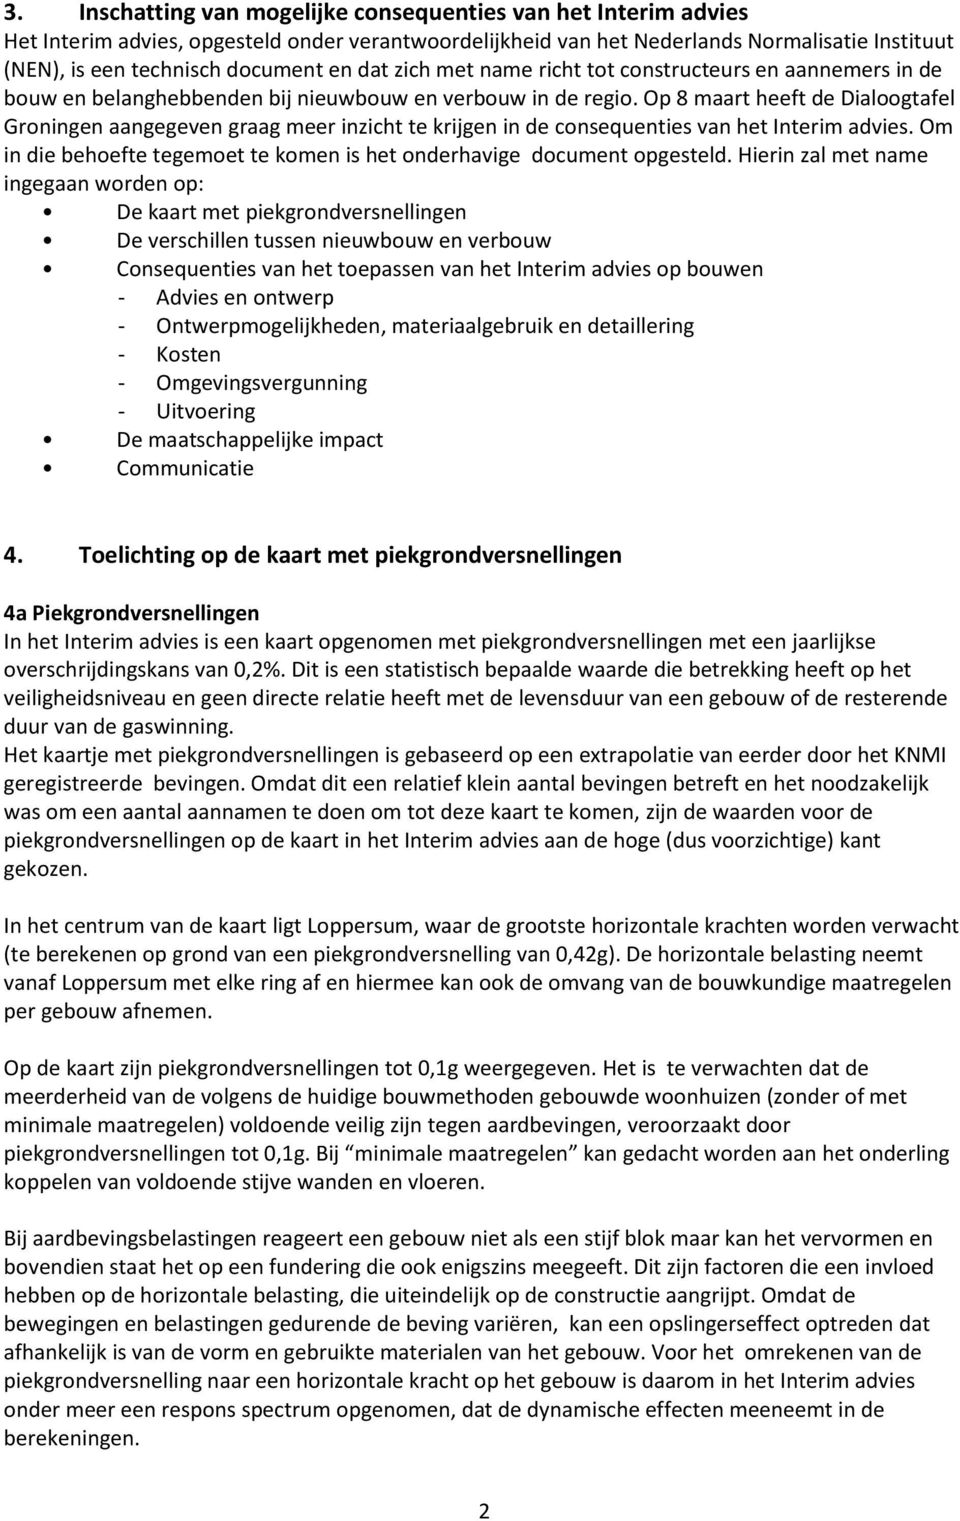 Op 8 maart heeft de Dialoogtafel Groningen aangegeven graag meer inzicht te krijgen in de consequenties van het Interim advies.